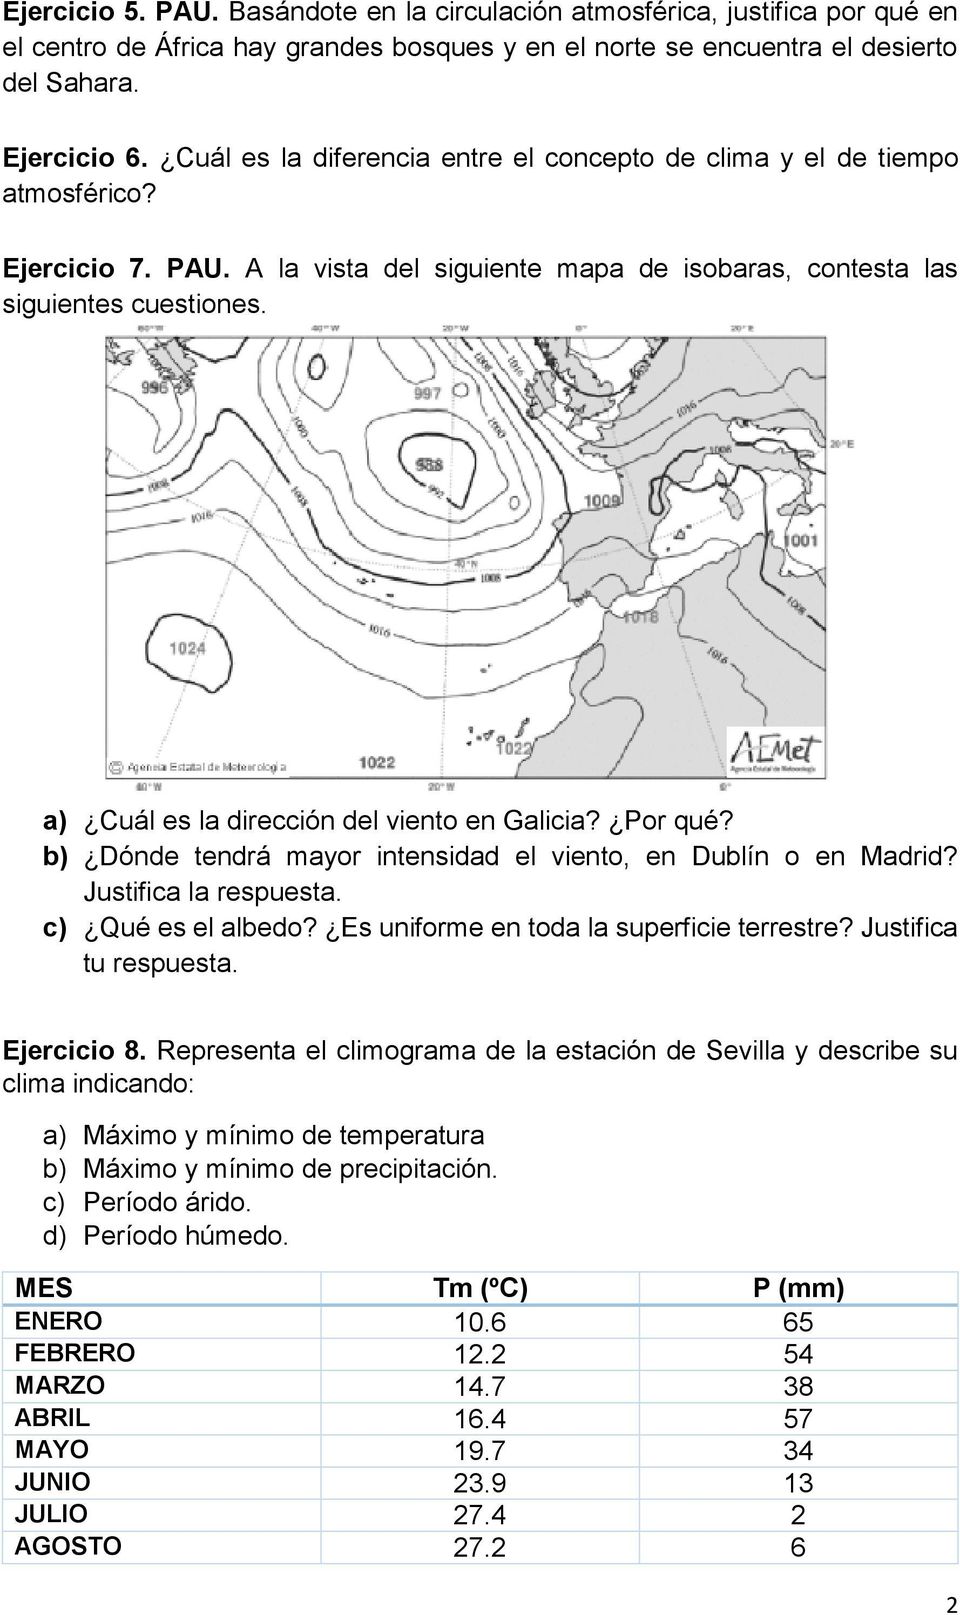 a) Cuál es la dirección del viento en Galicia? Por qué? b) Dónde tendrá mayor intensidad el viento, en Dublín o en Madrid? Justifica la respuesta. c) Qué es el albedo?